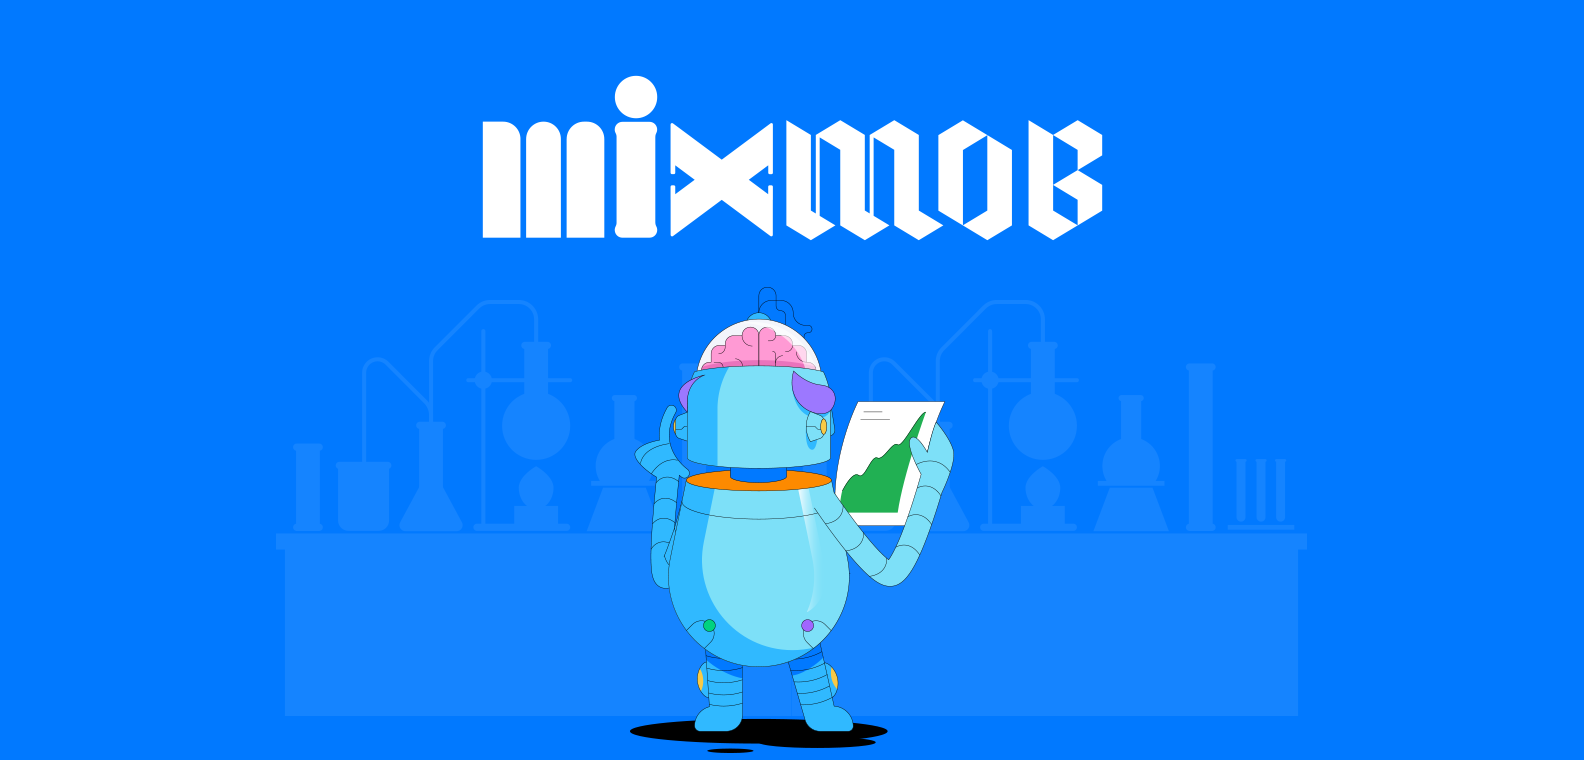 Mixmob